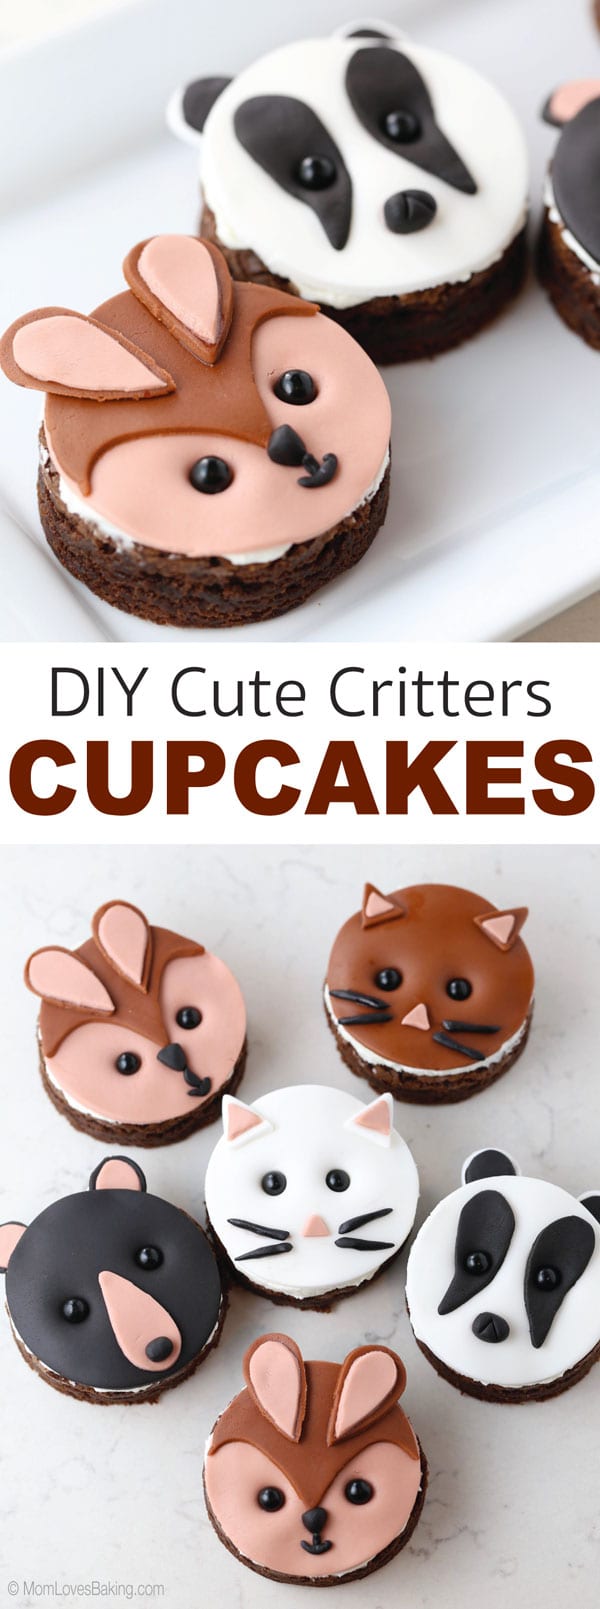 DIY cute critter fox, badger and bear cupcakes